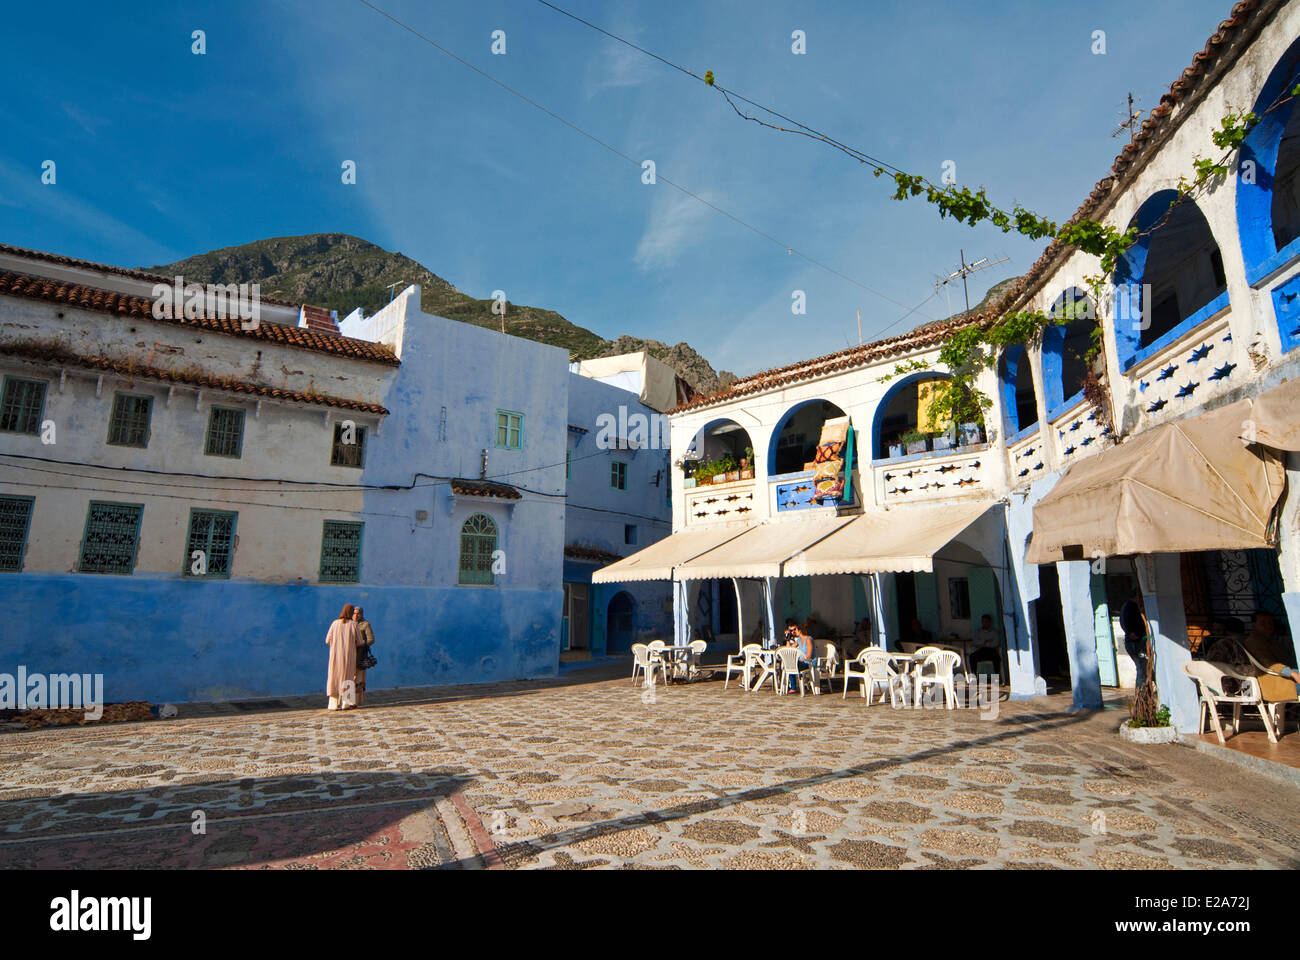 Morocco, Rif region, Chefchaouen (Chaouen), kasbah Stock Photo